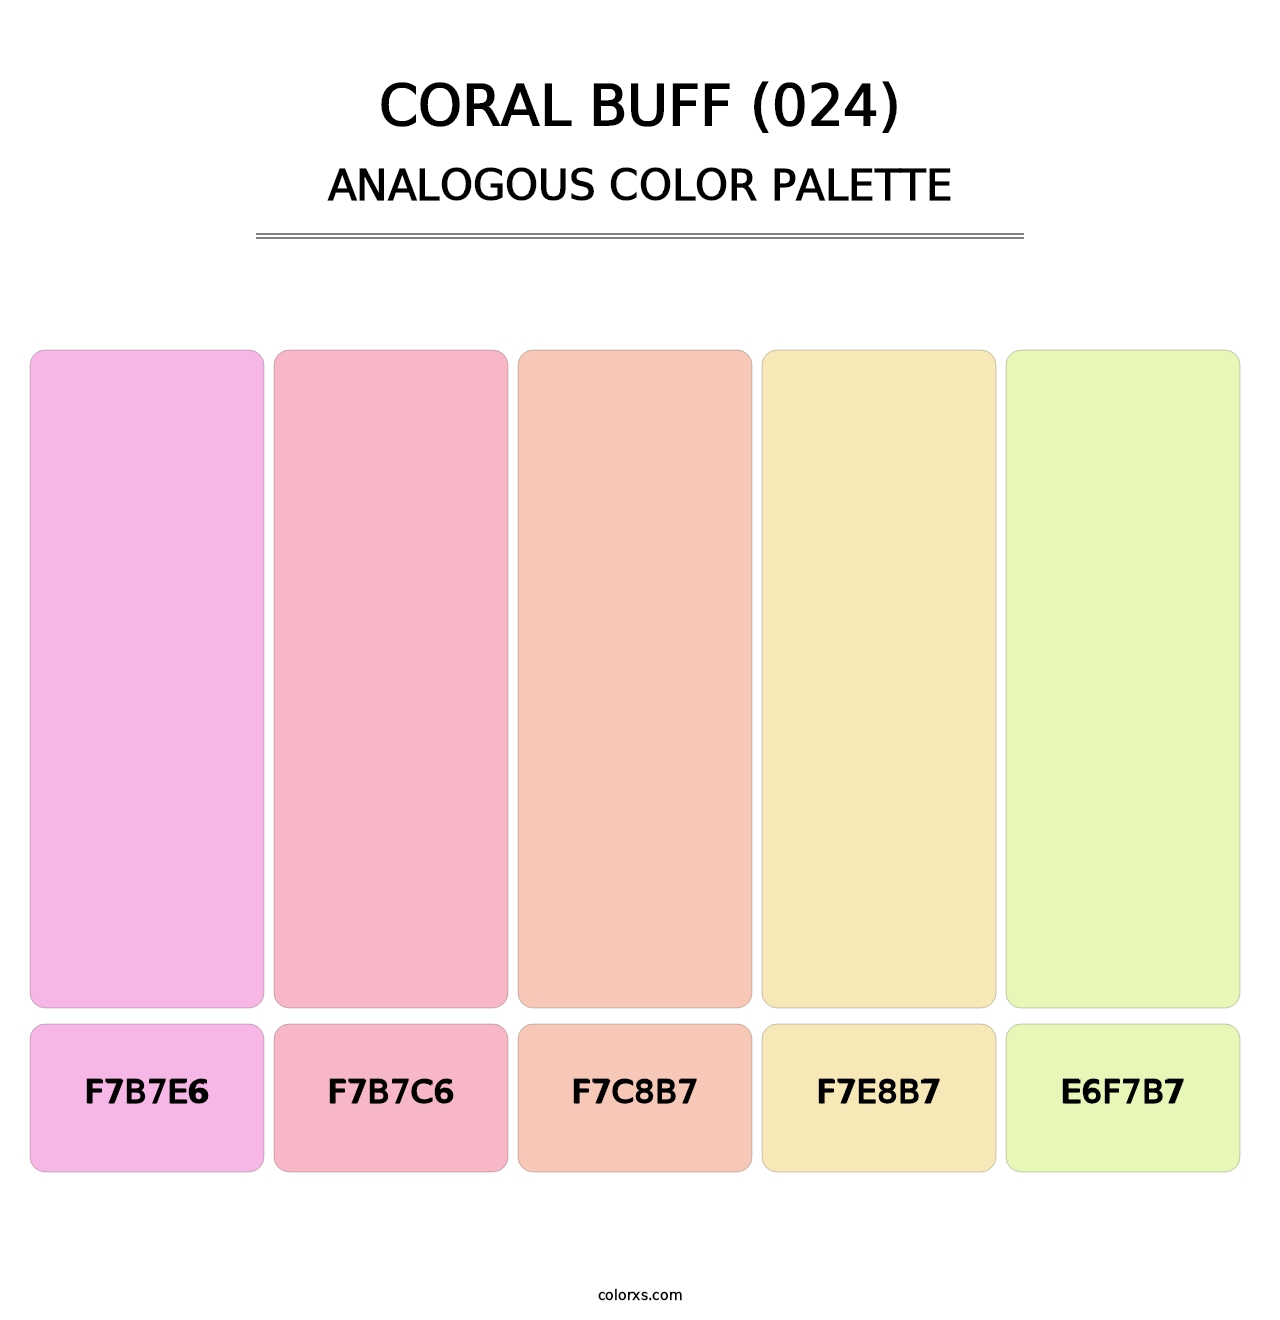 Coral Buff (024) - Analogous Color Palette